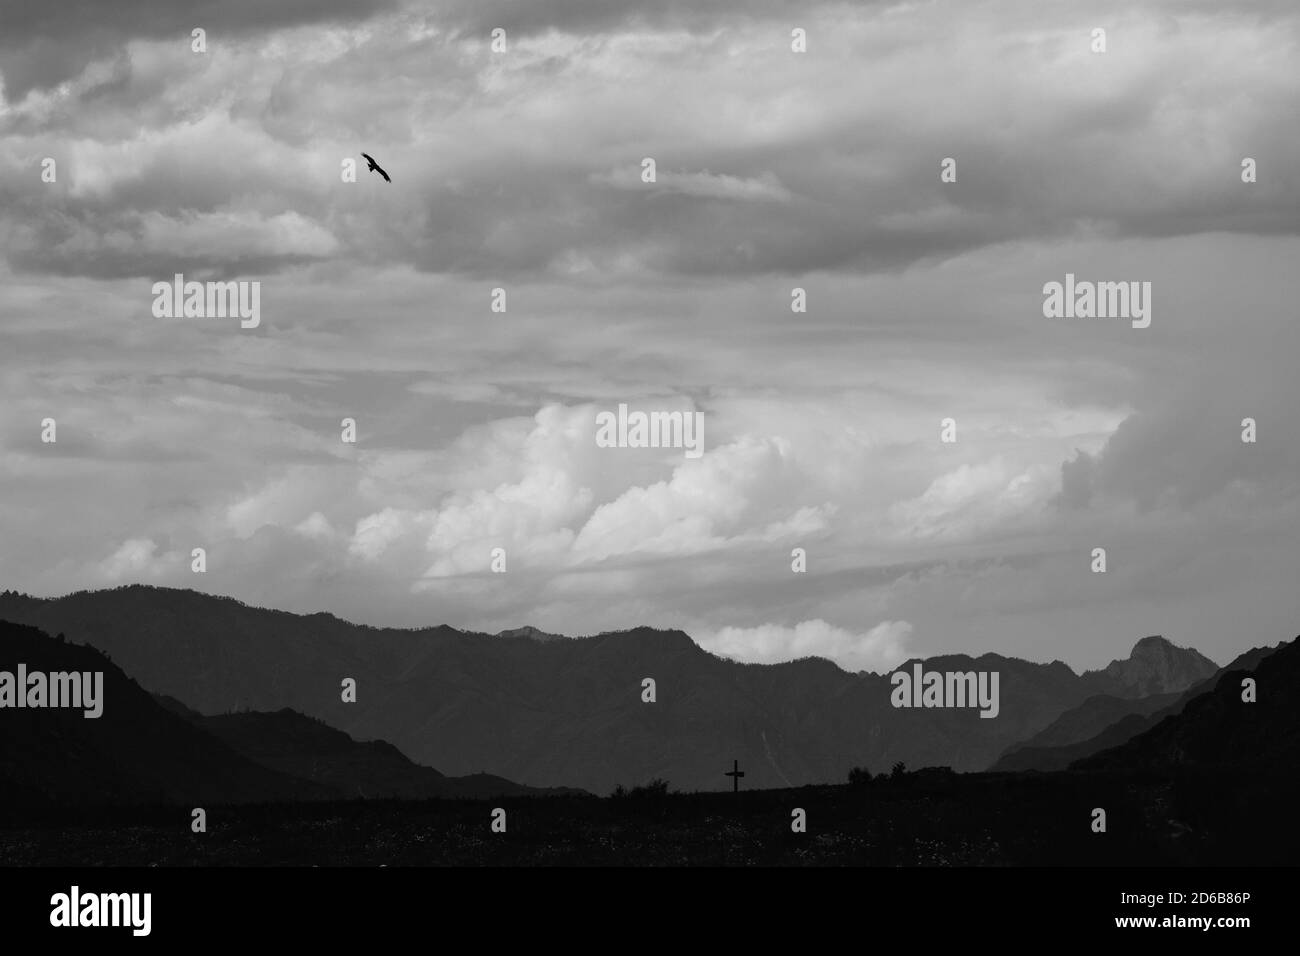 La foto del paesaggio assomiglia a un disegno a matita. Pitch corvi neri che volano sul campo. Foto Stock